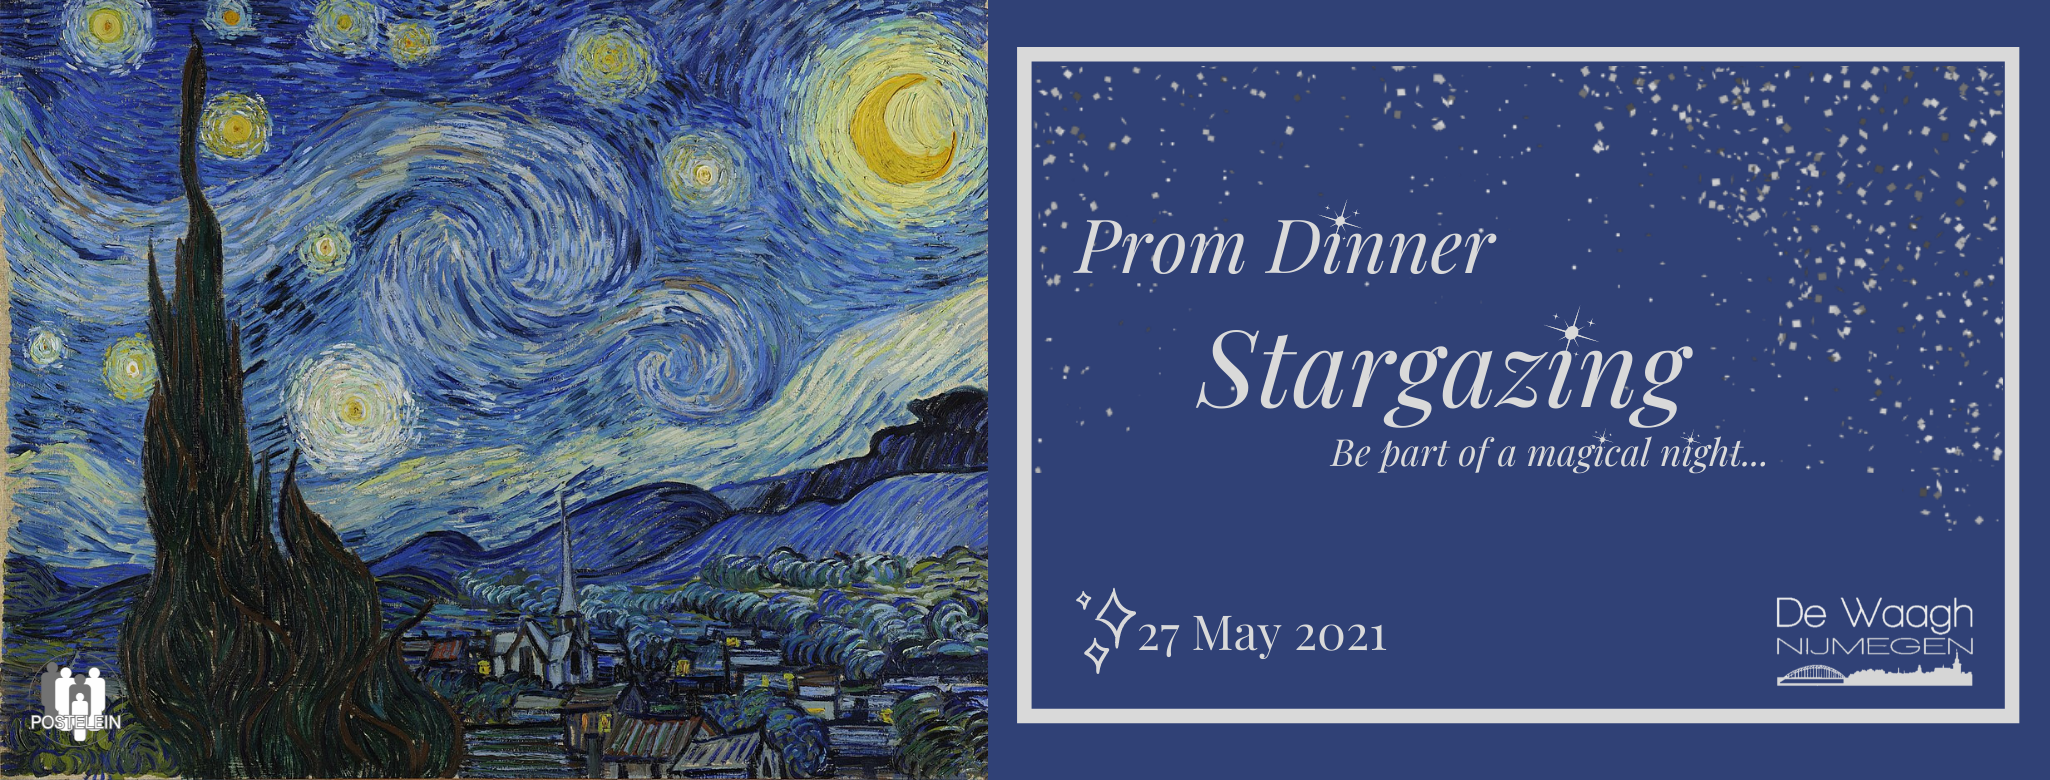 Prom Dinner: Stargazing